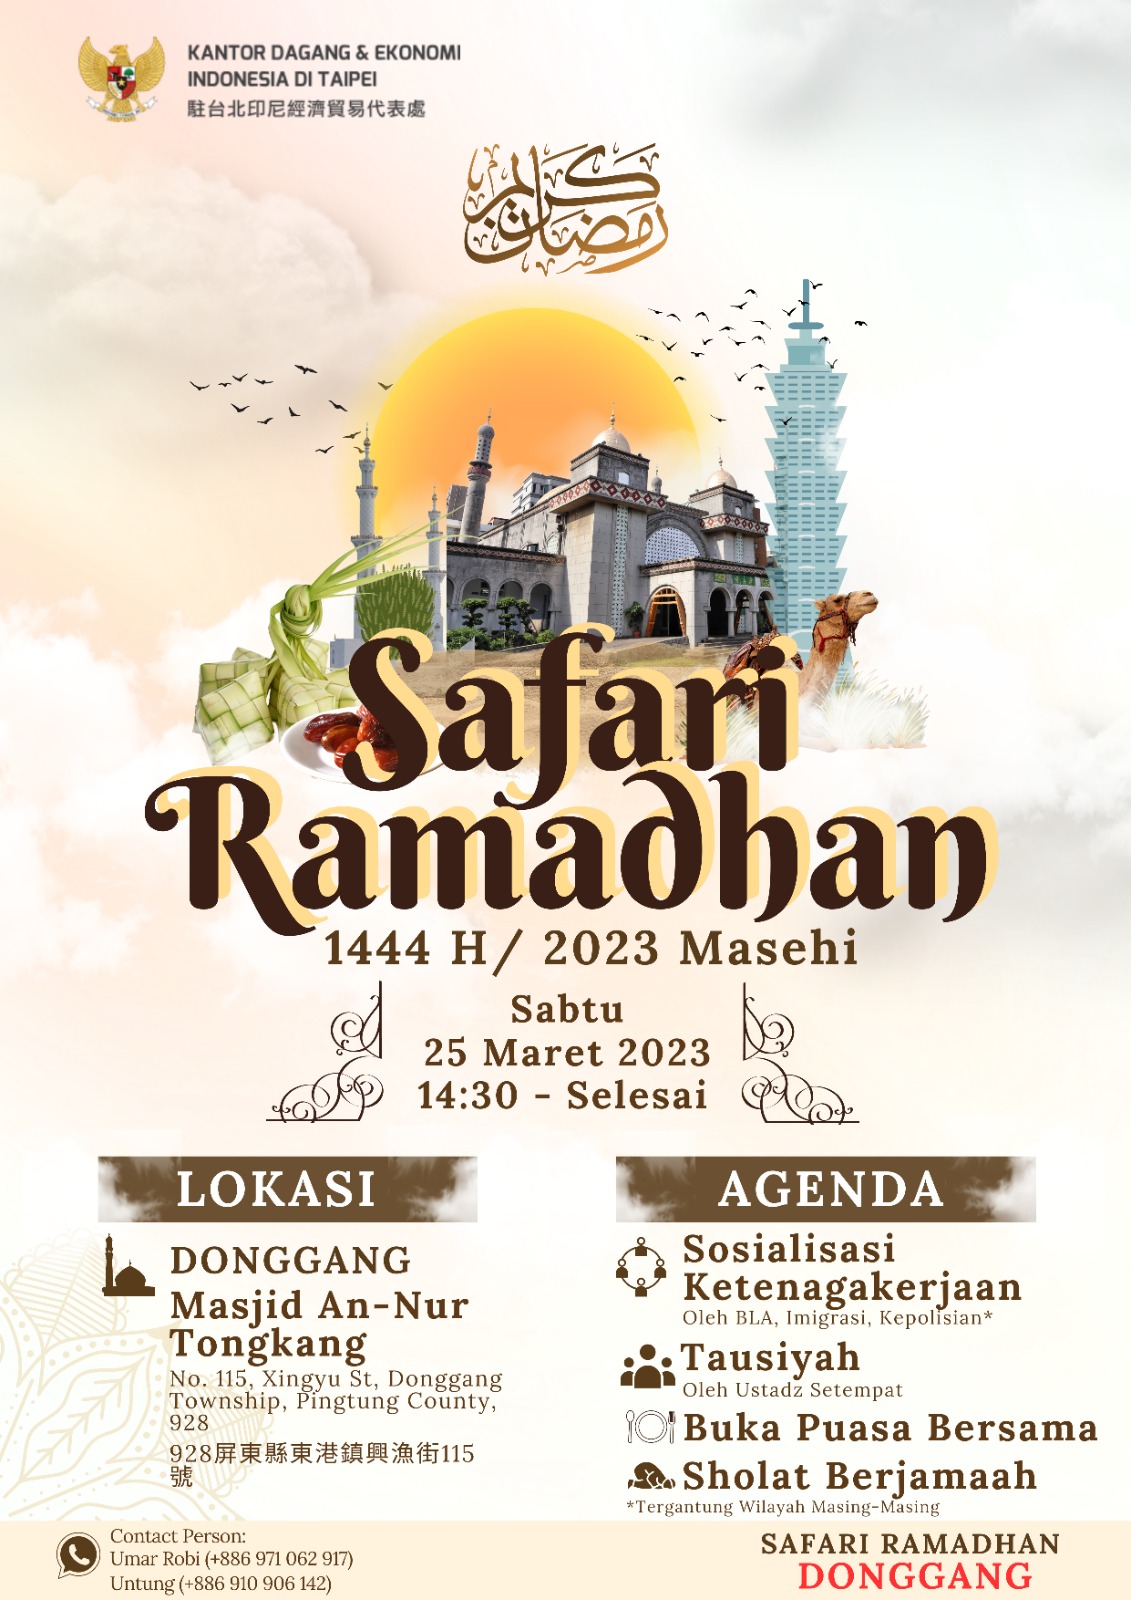  Safari Ramadhan akan dilaksanakan di Keelung, Yilan, Dongkang, dan Penghu